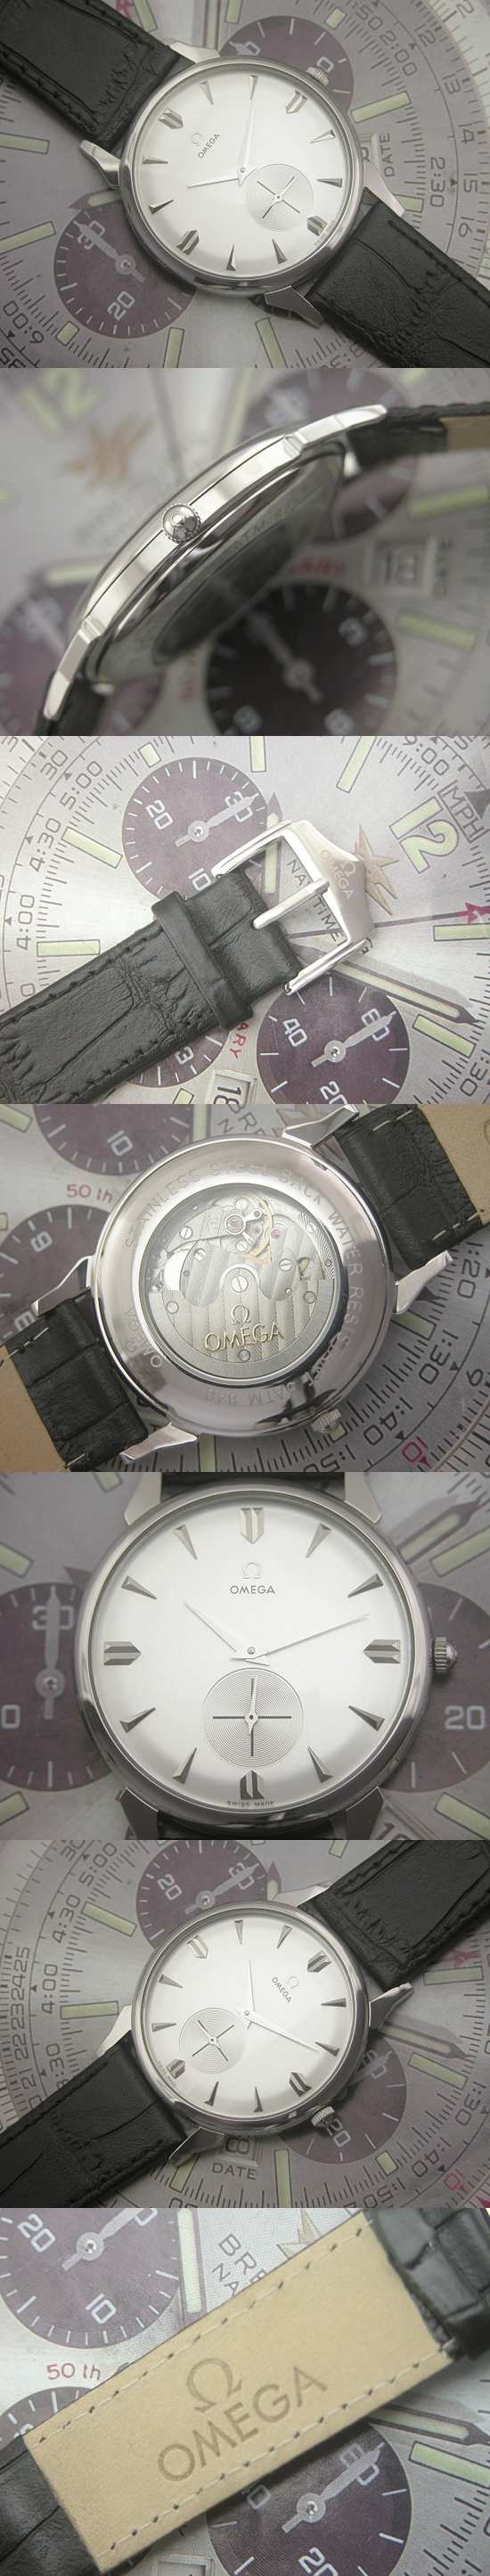 おしゃれなブランド時計がオメガ-シーマスター -OMEGA-2576-16-ab-男性用を提供します.